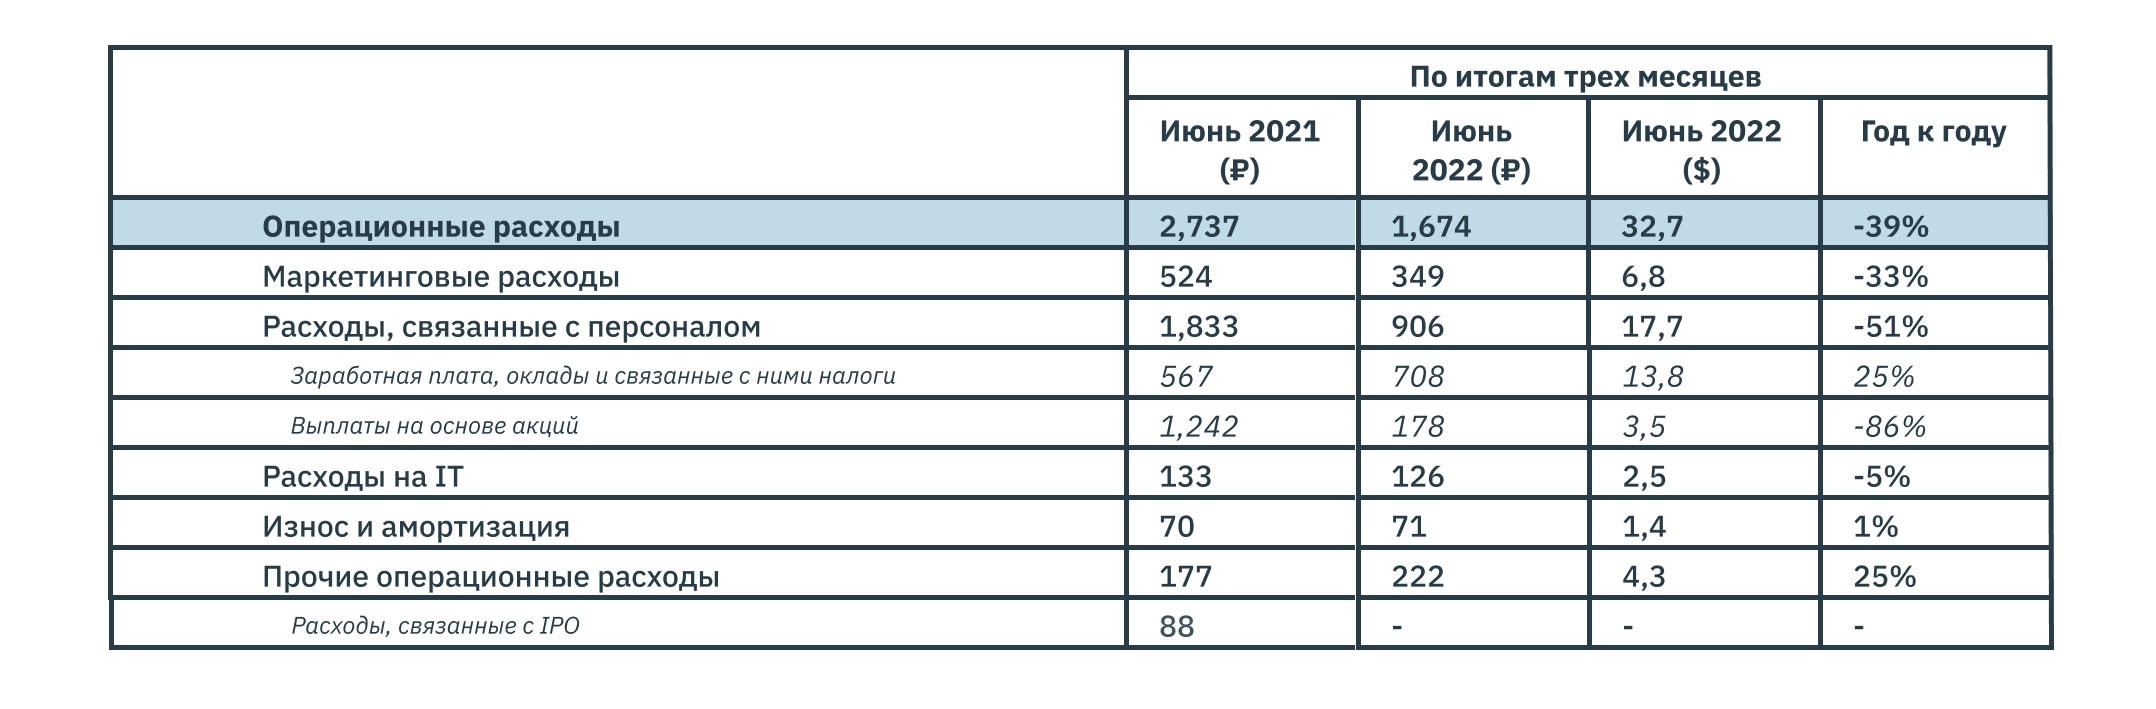 Анализ отчетности ЦИАН за 2 квартал 2022